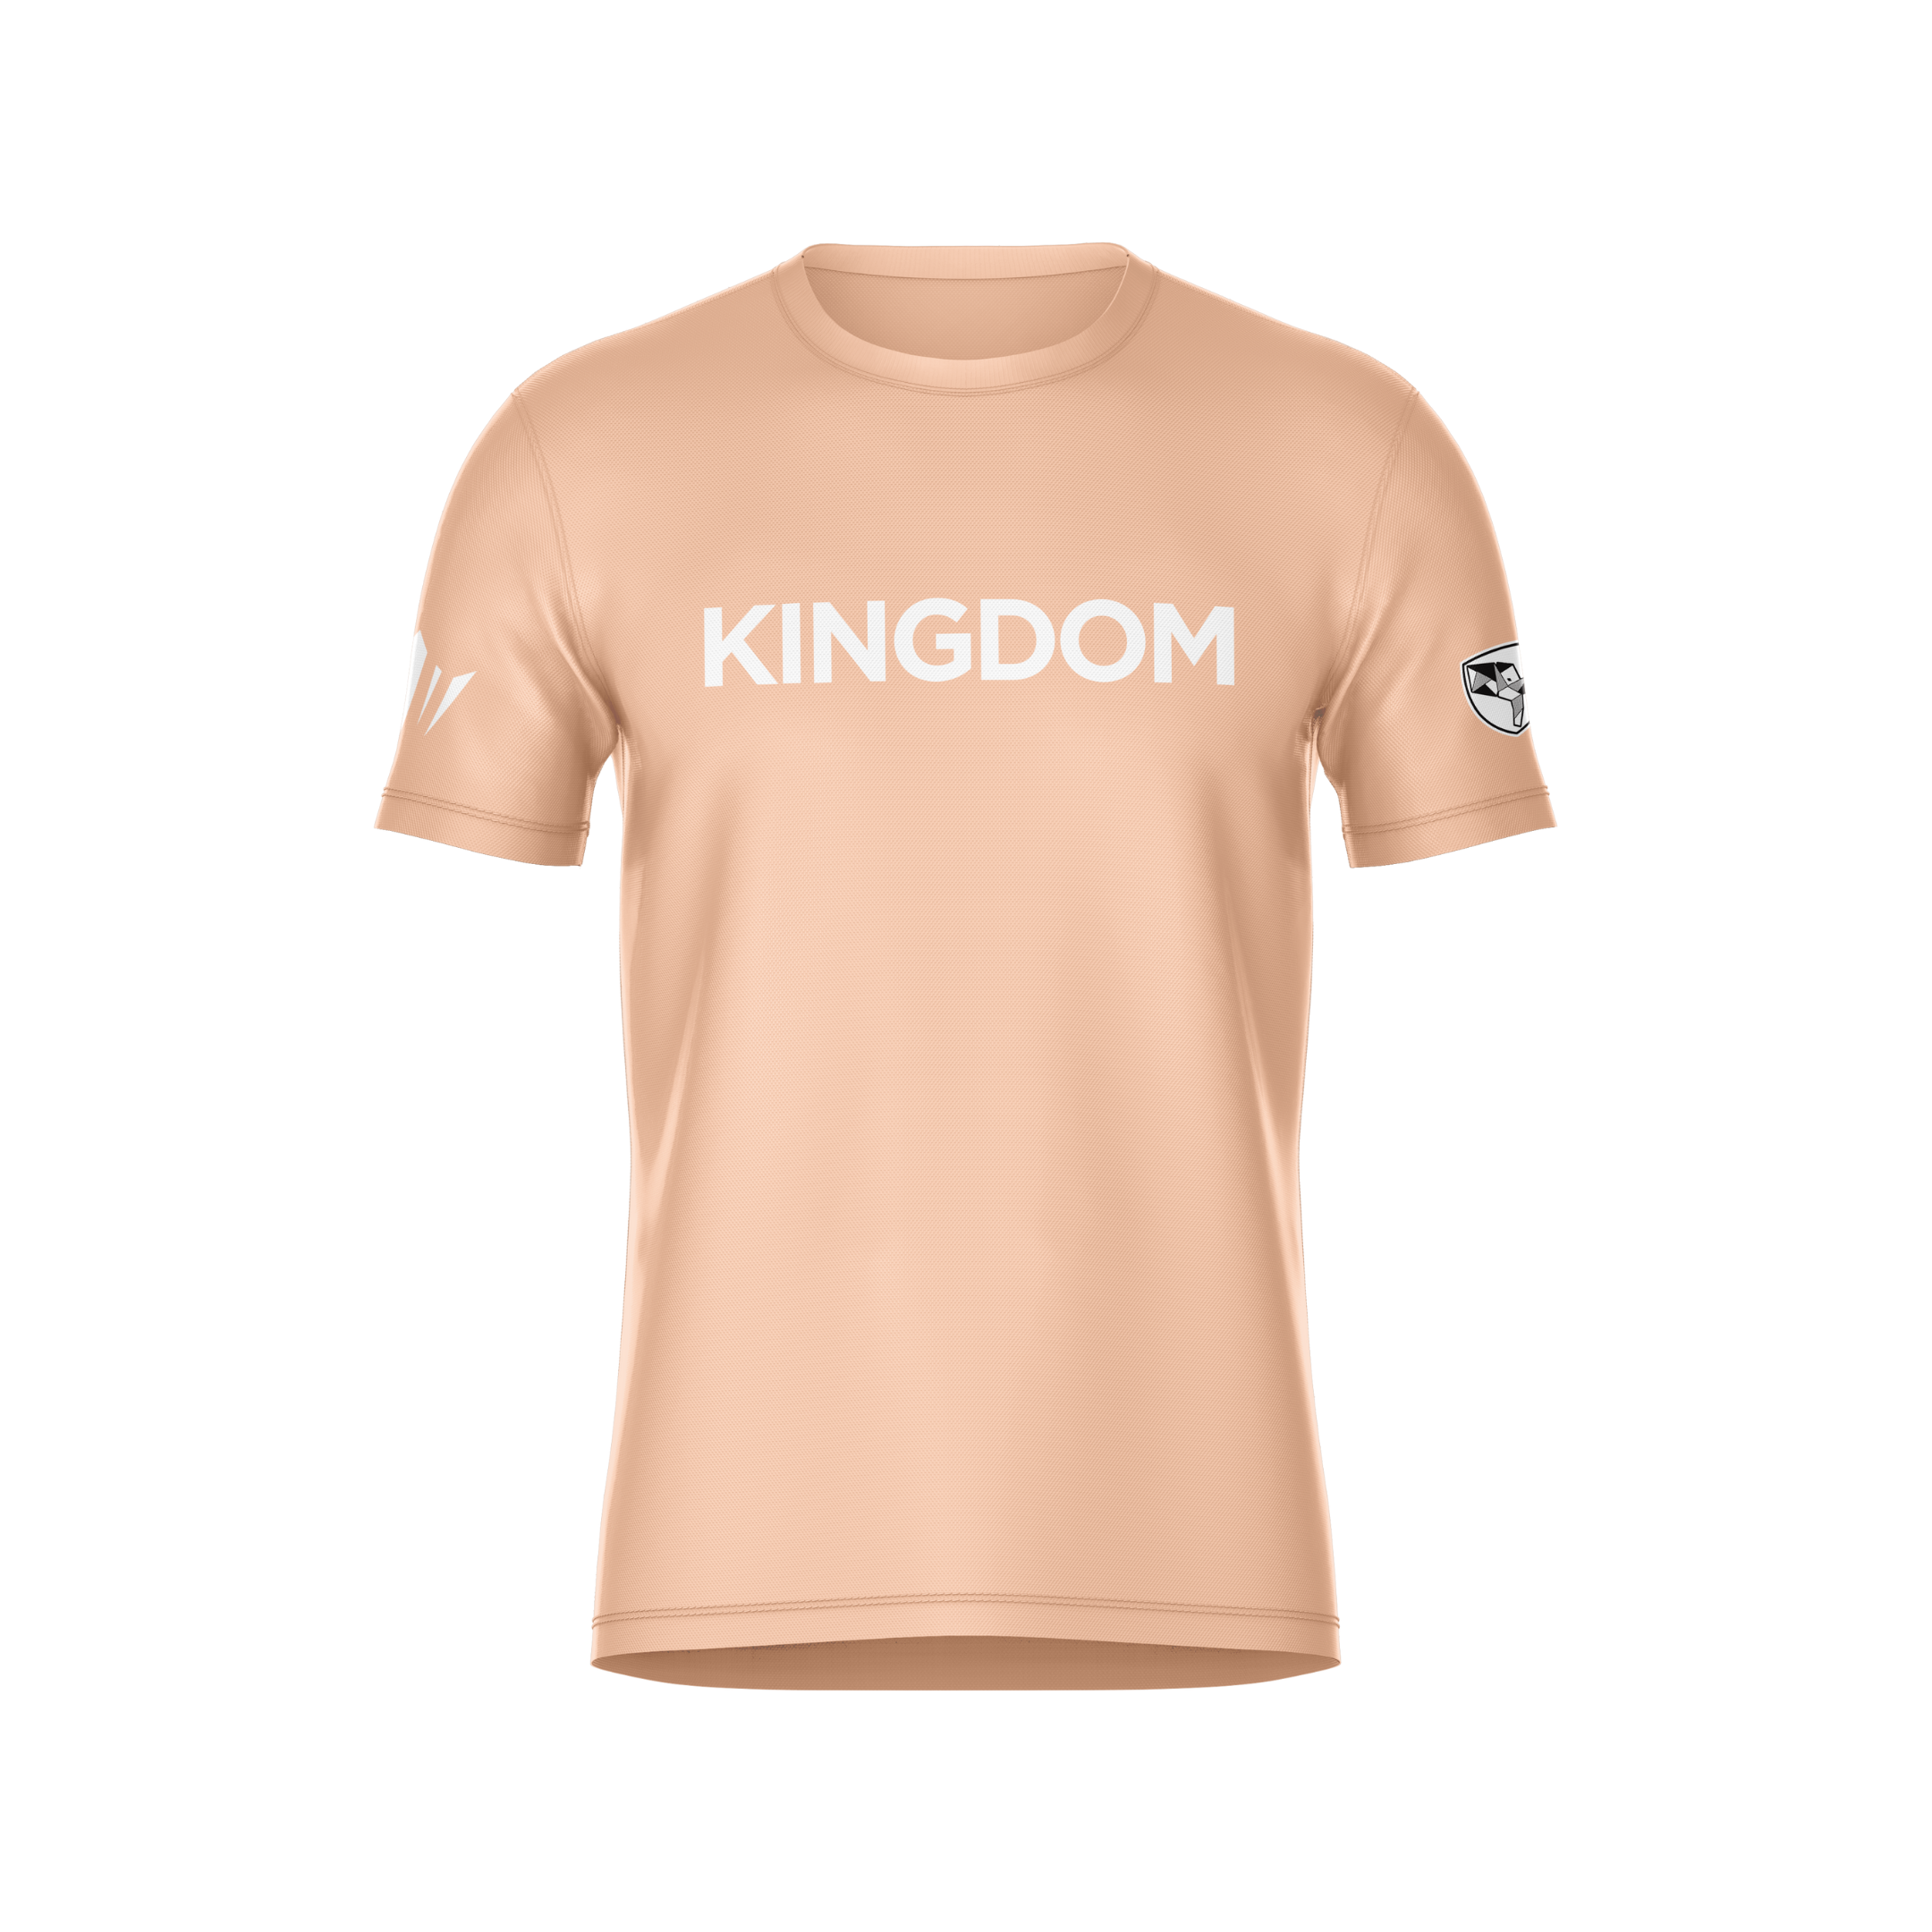 Kingdom Tee - Orange